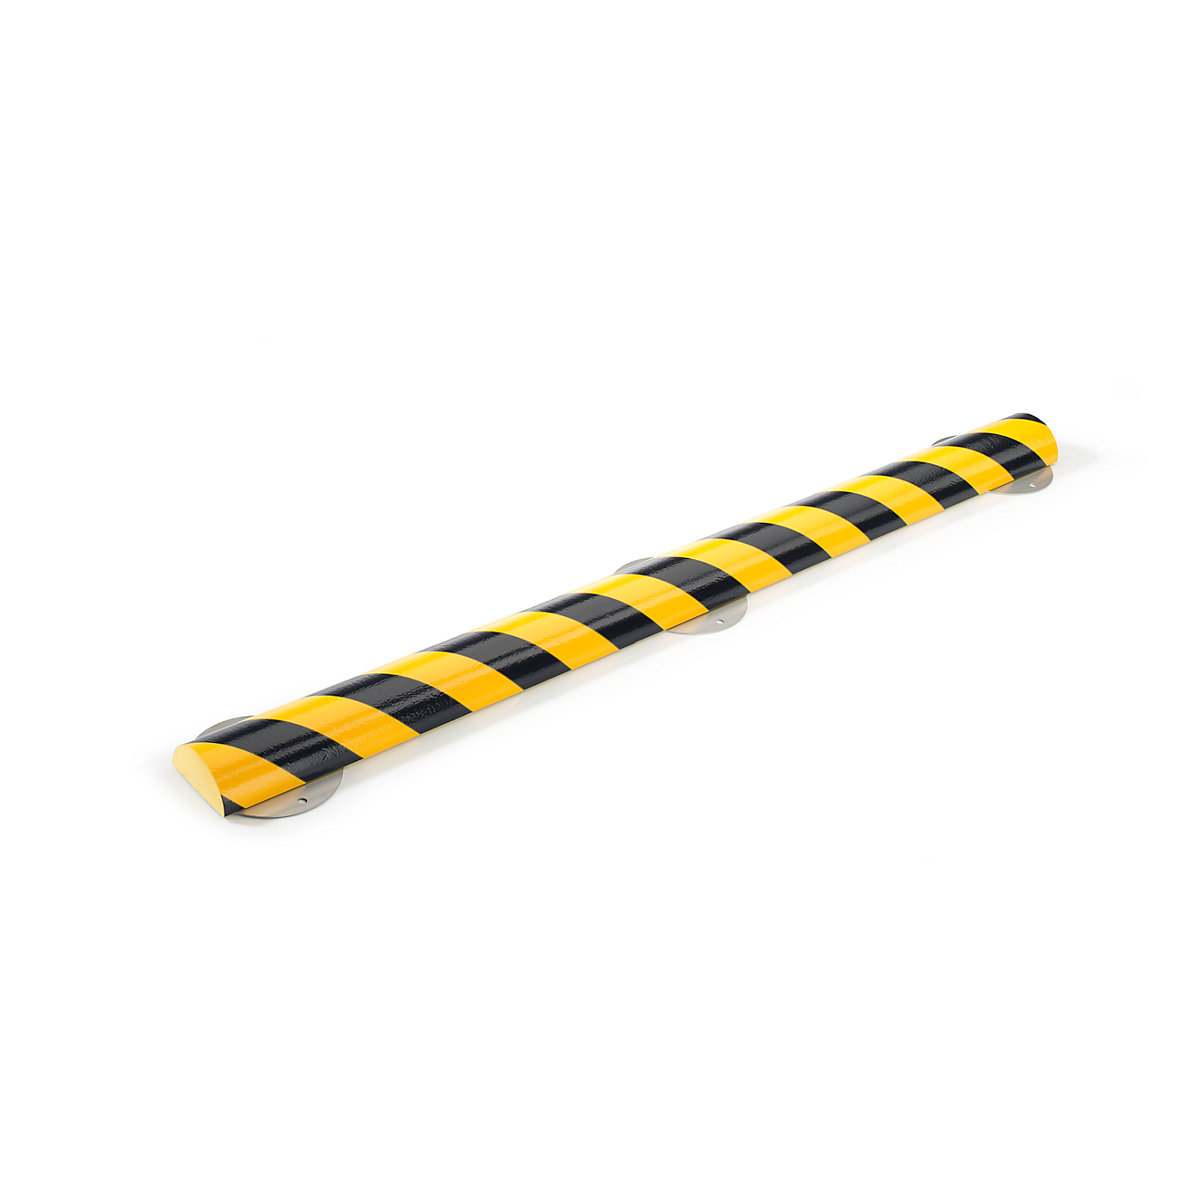 SHG – Protecție pentru suprafețe Knuffi® cu șină de montaj, tip C+, bucată de 500 mm, negru / galben